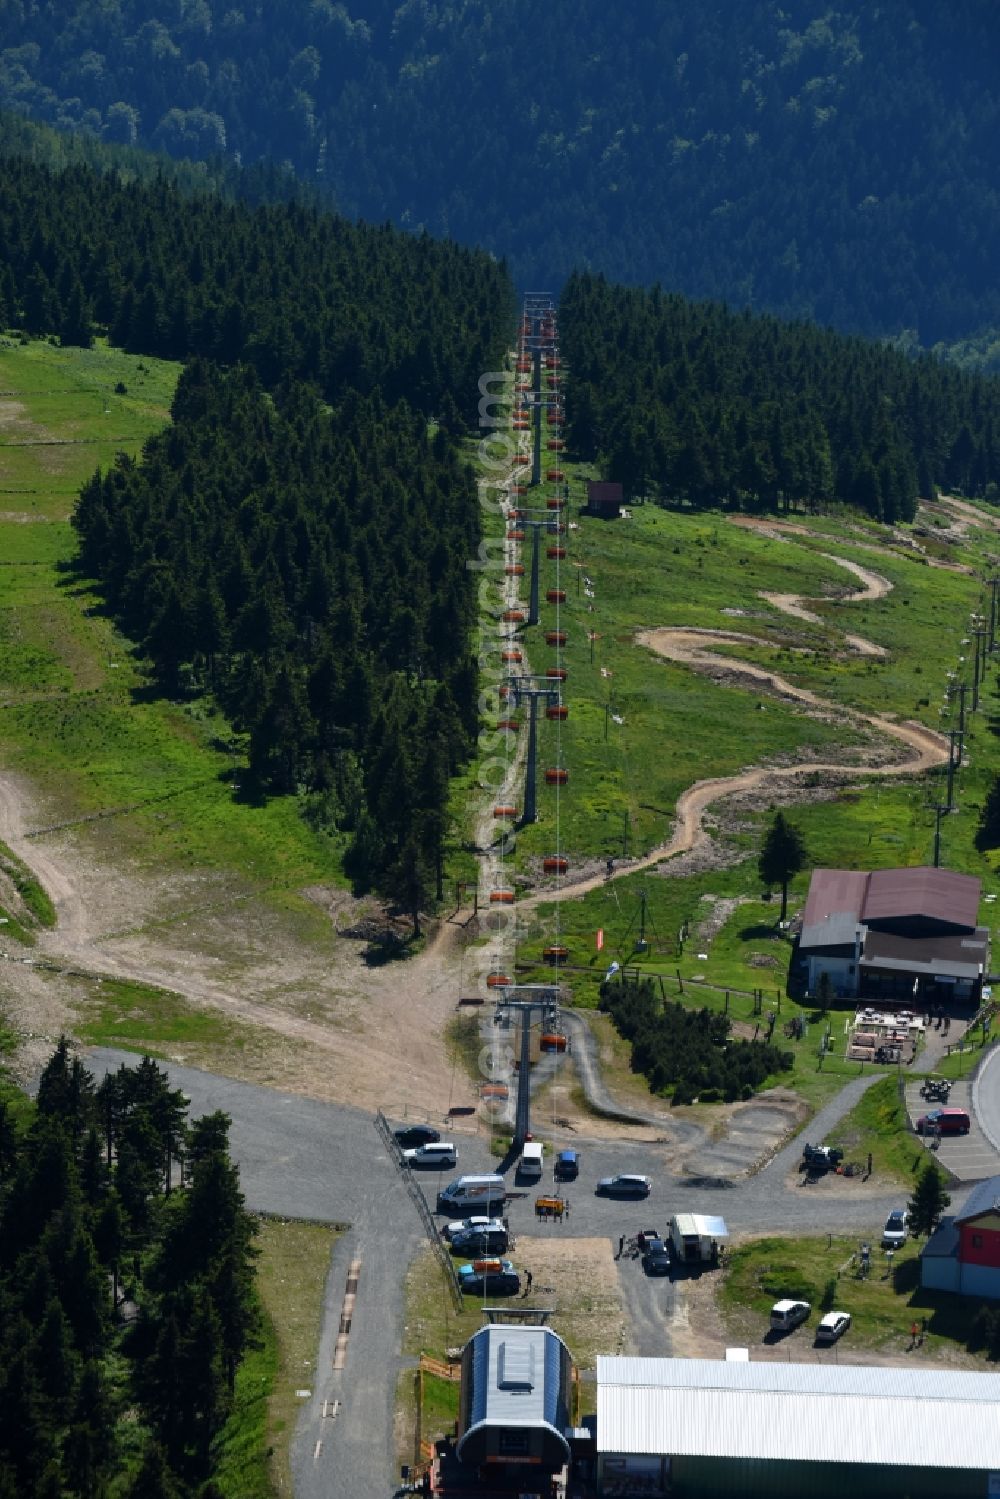 Aerial photograph Jachymov - Sankt Joachimsthal - Leisure Centre with lift on Amusement Park Trail Park on Klinovec in Jachymov - Sankt Joachimsthal in Cechy - Boehmen, Czech Republic